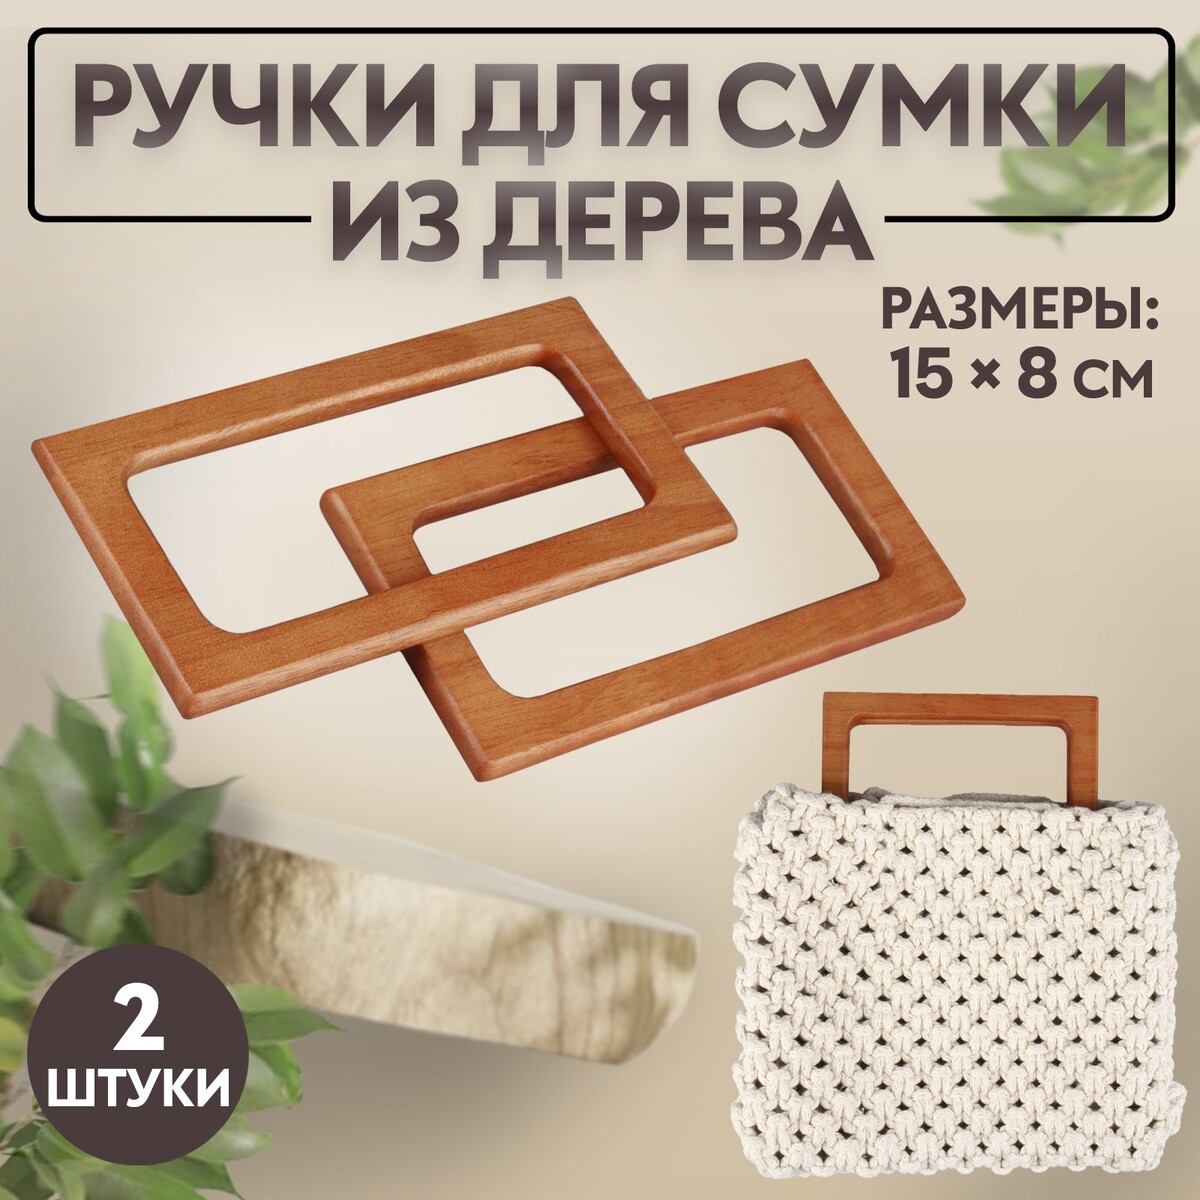 Ручки для сумки деревянные, 15 × 8 см, 2 шт, цвет светло-коричневый ручки для сумки деревянные плетеные d 10 2 12 5 см 2 шт коричневый